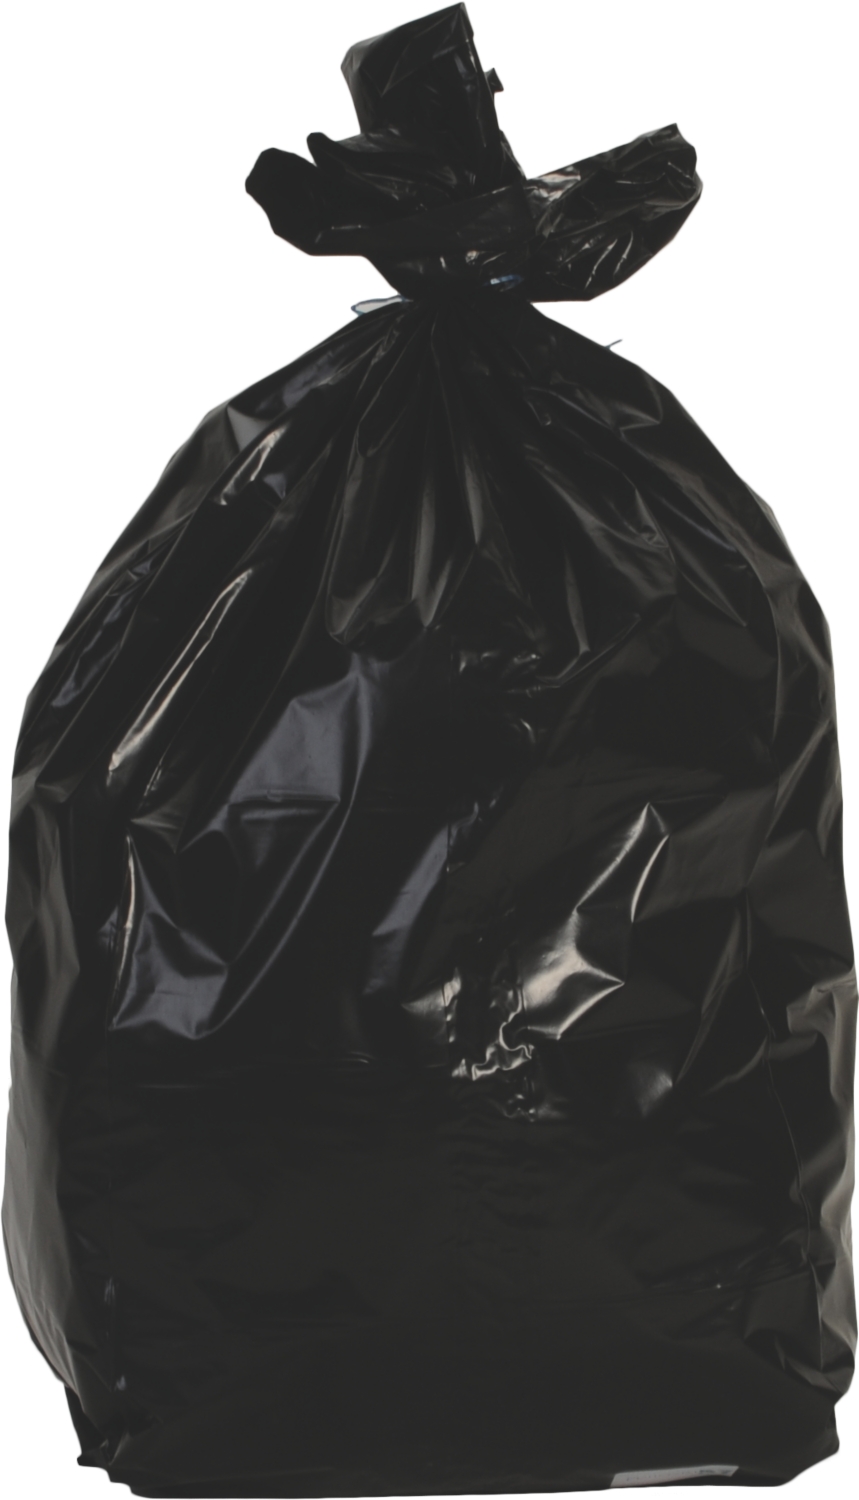  Sac poubelle BD - Avec liens - 1 rouleau de 100 sacs - Noir 